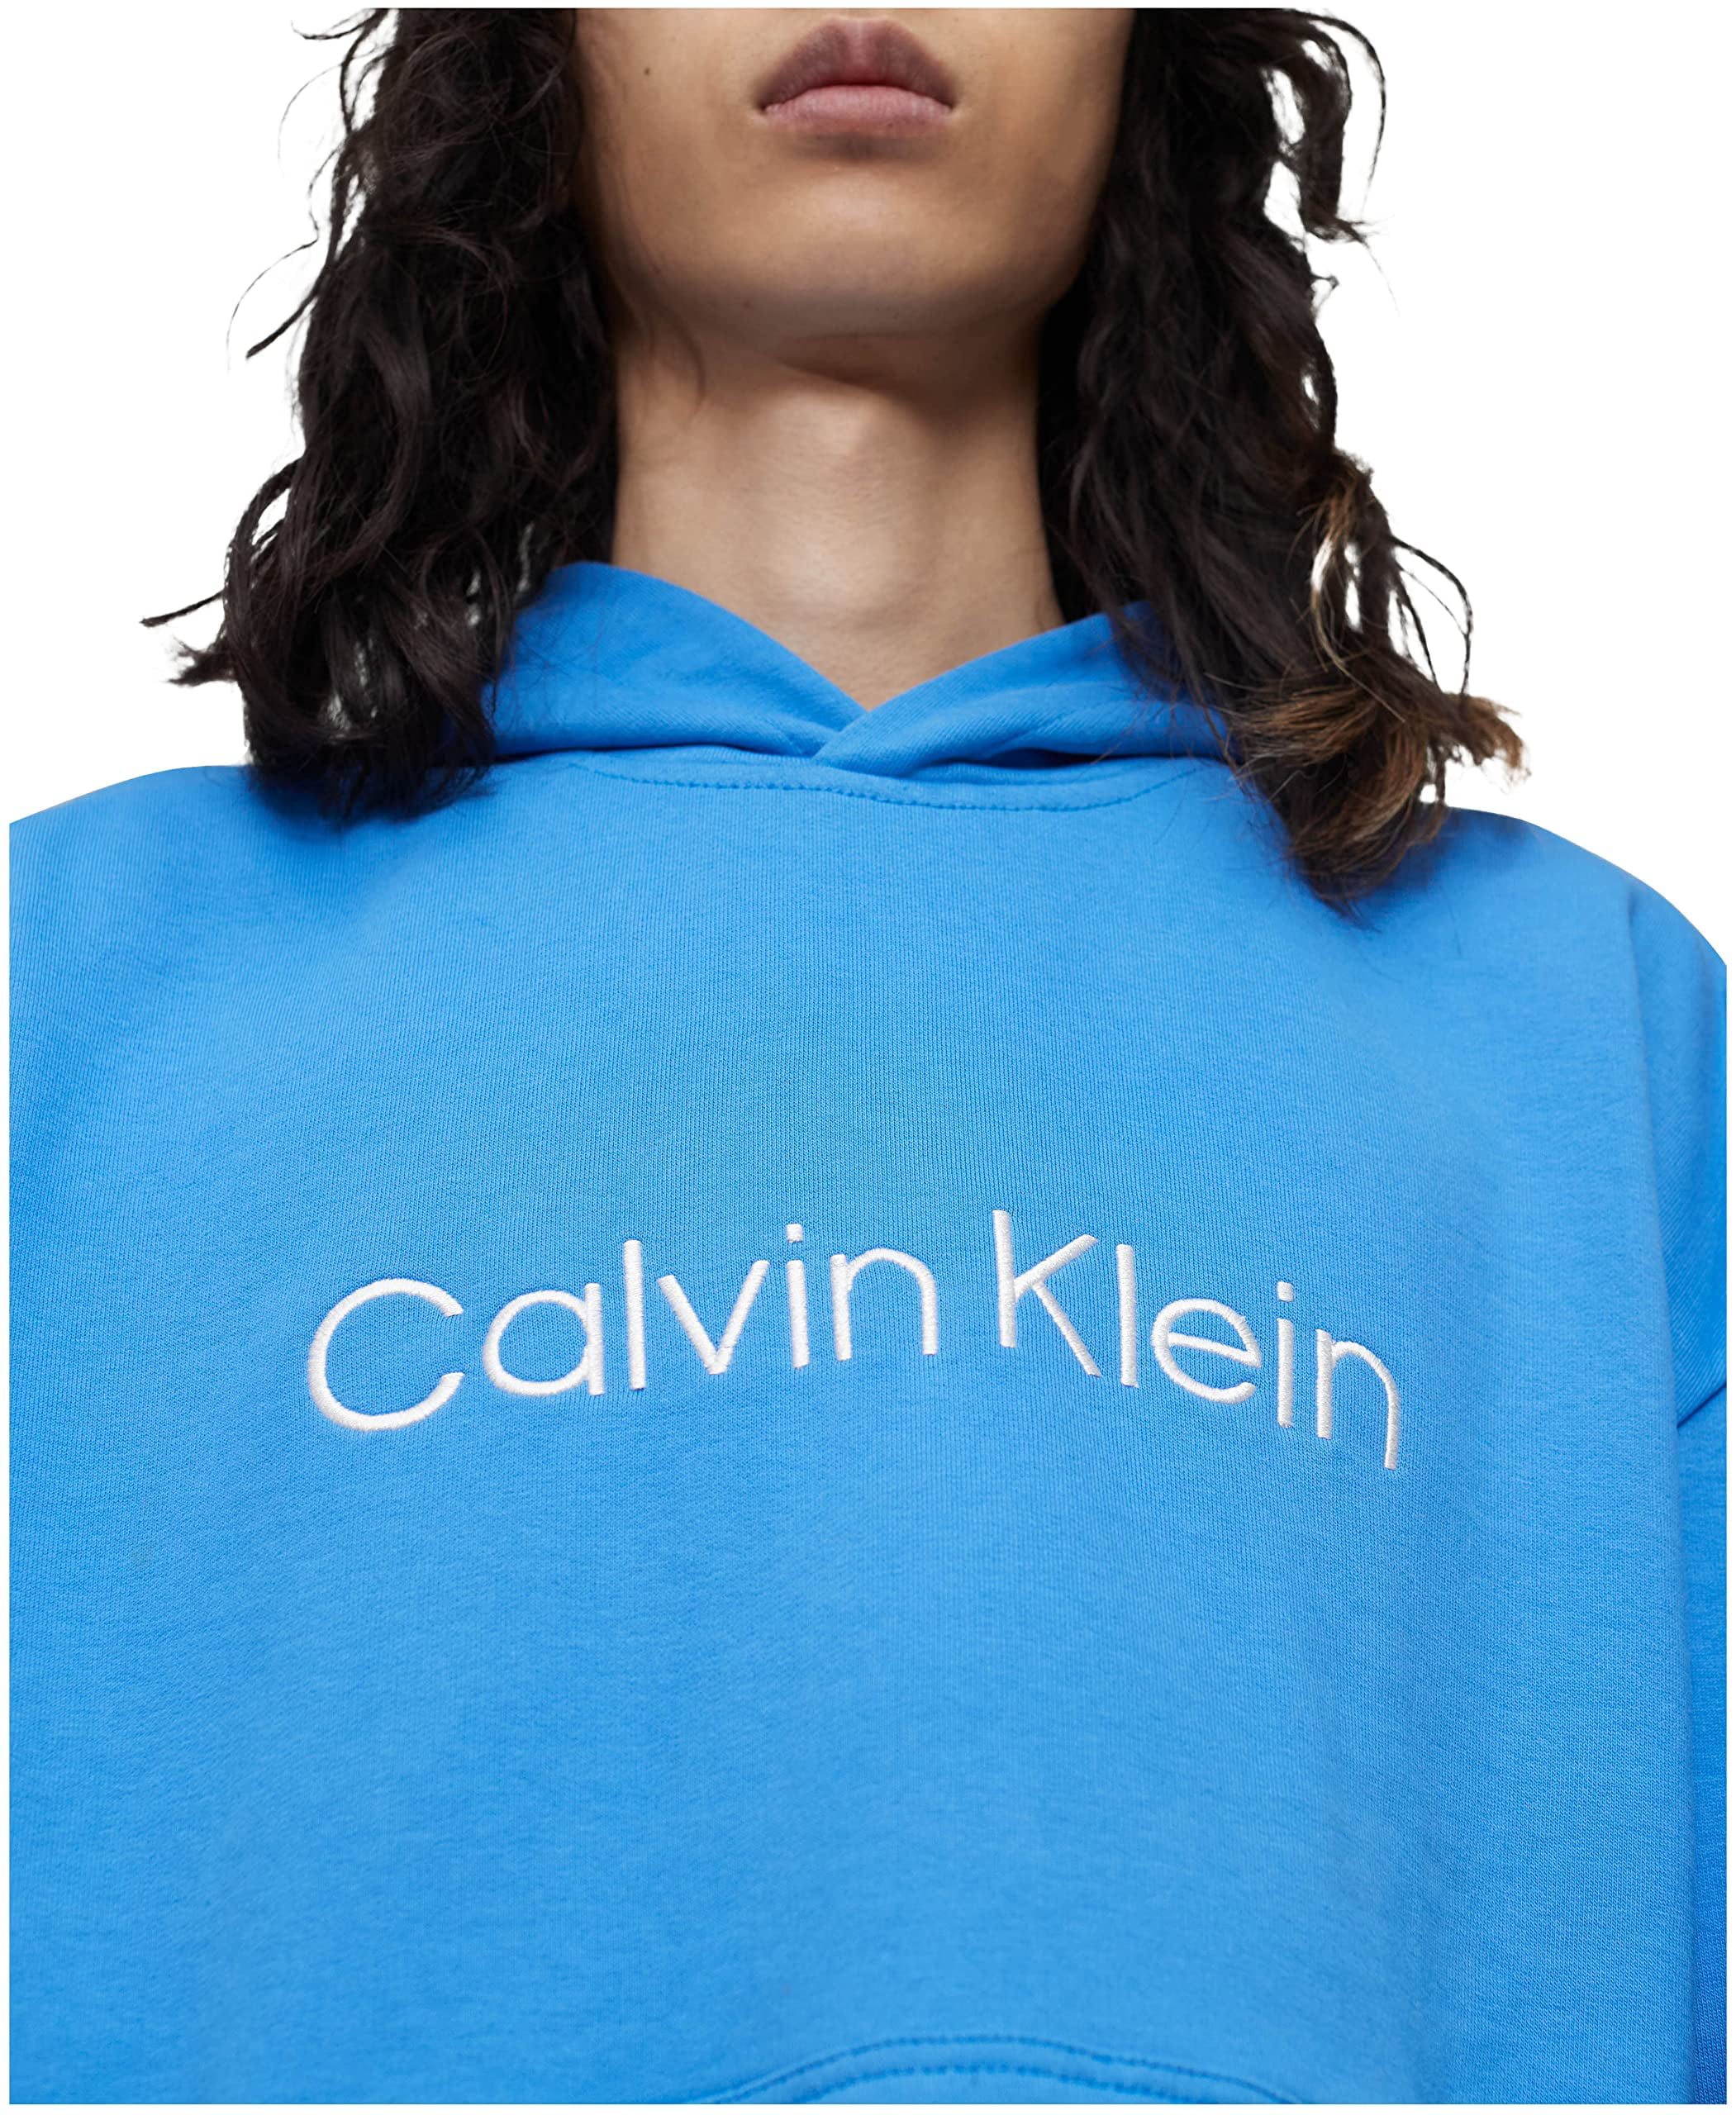 begrenzte Zeit verfügbar Calvin Klein Mens Cotton Hooded Sweatshirt Pullover